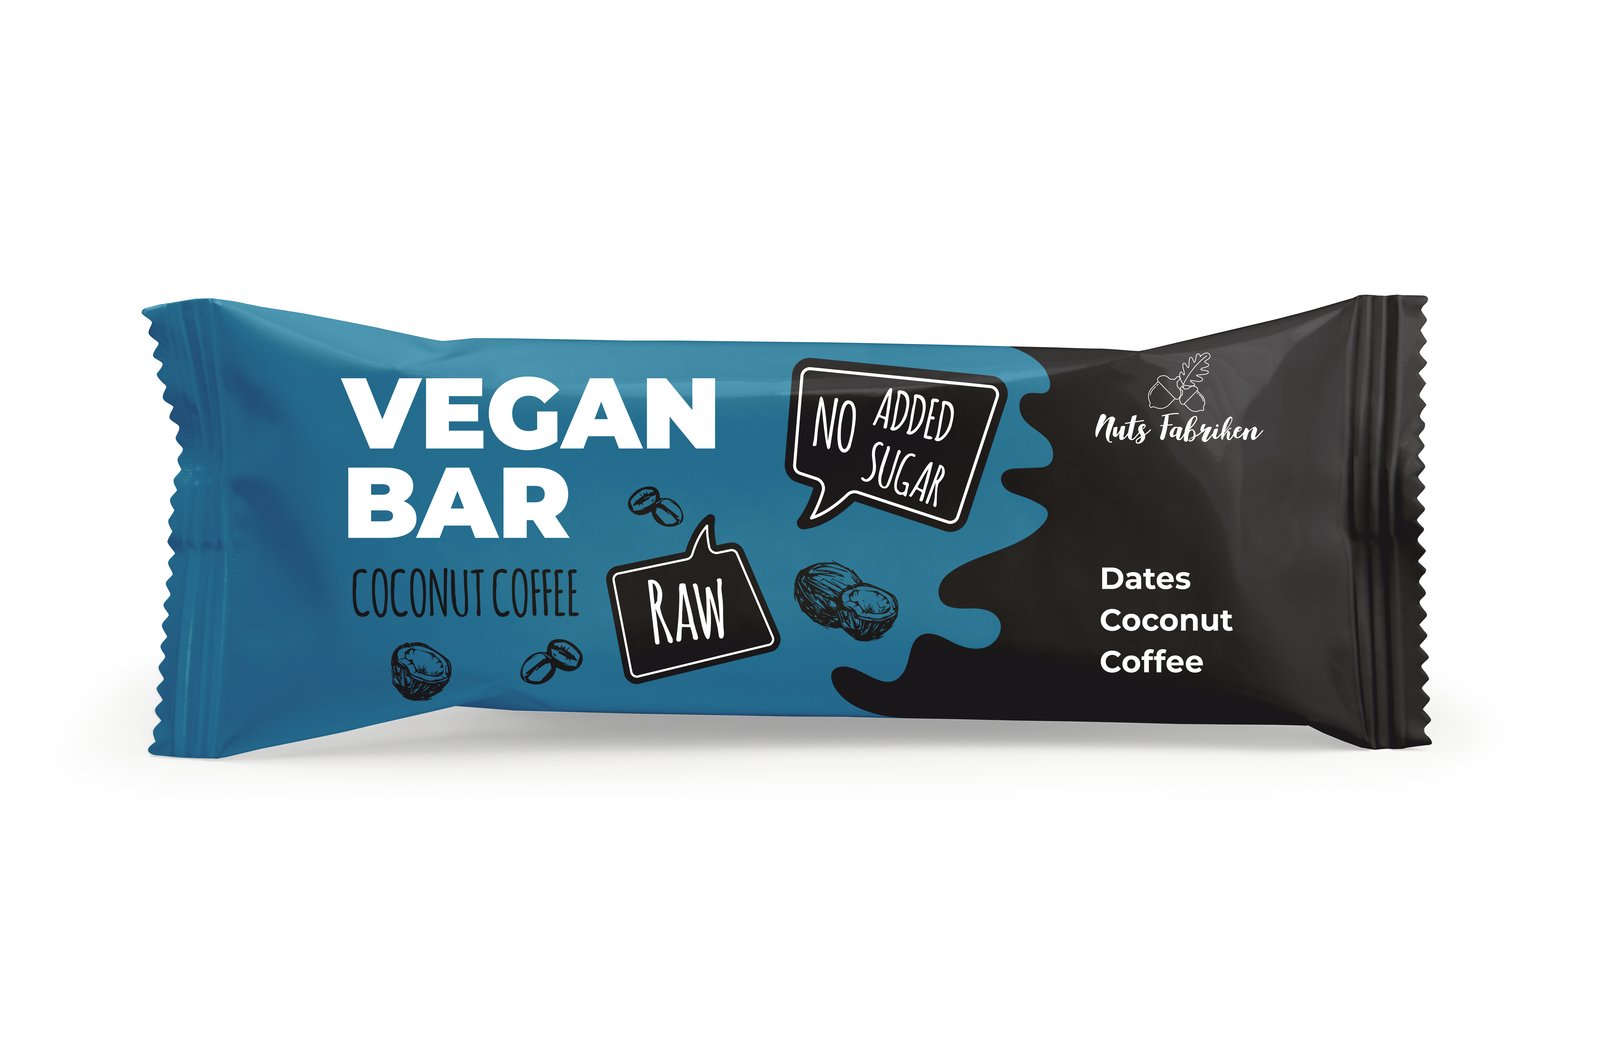 Nuts Fabriken Vegan Bar Kokos & Kaffe 40 g